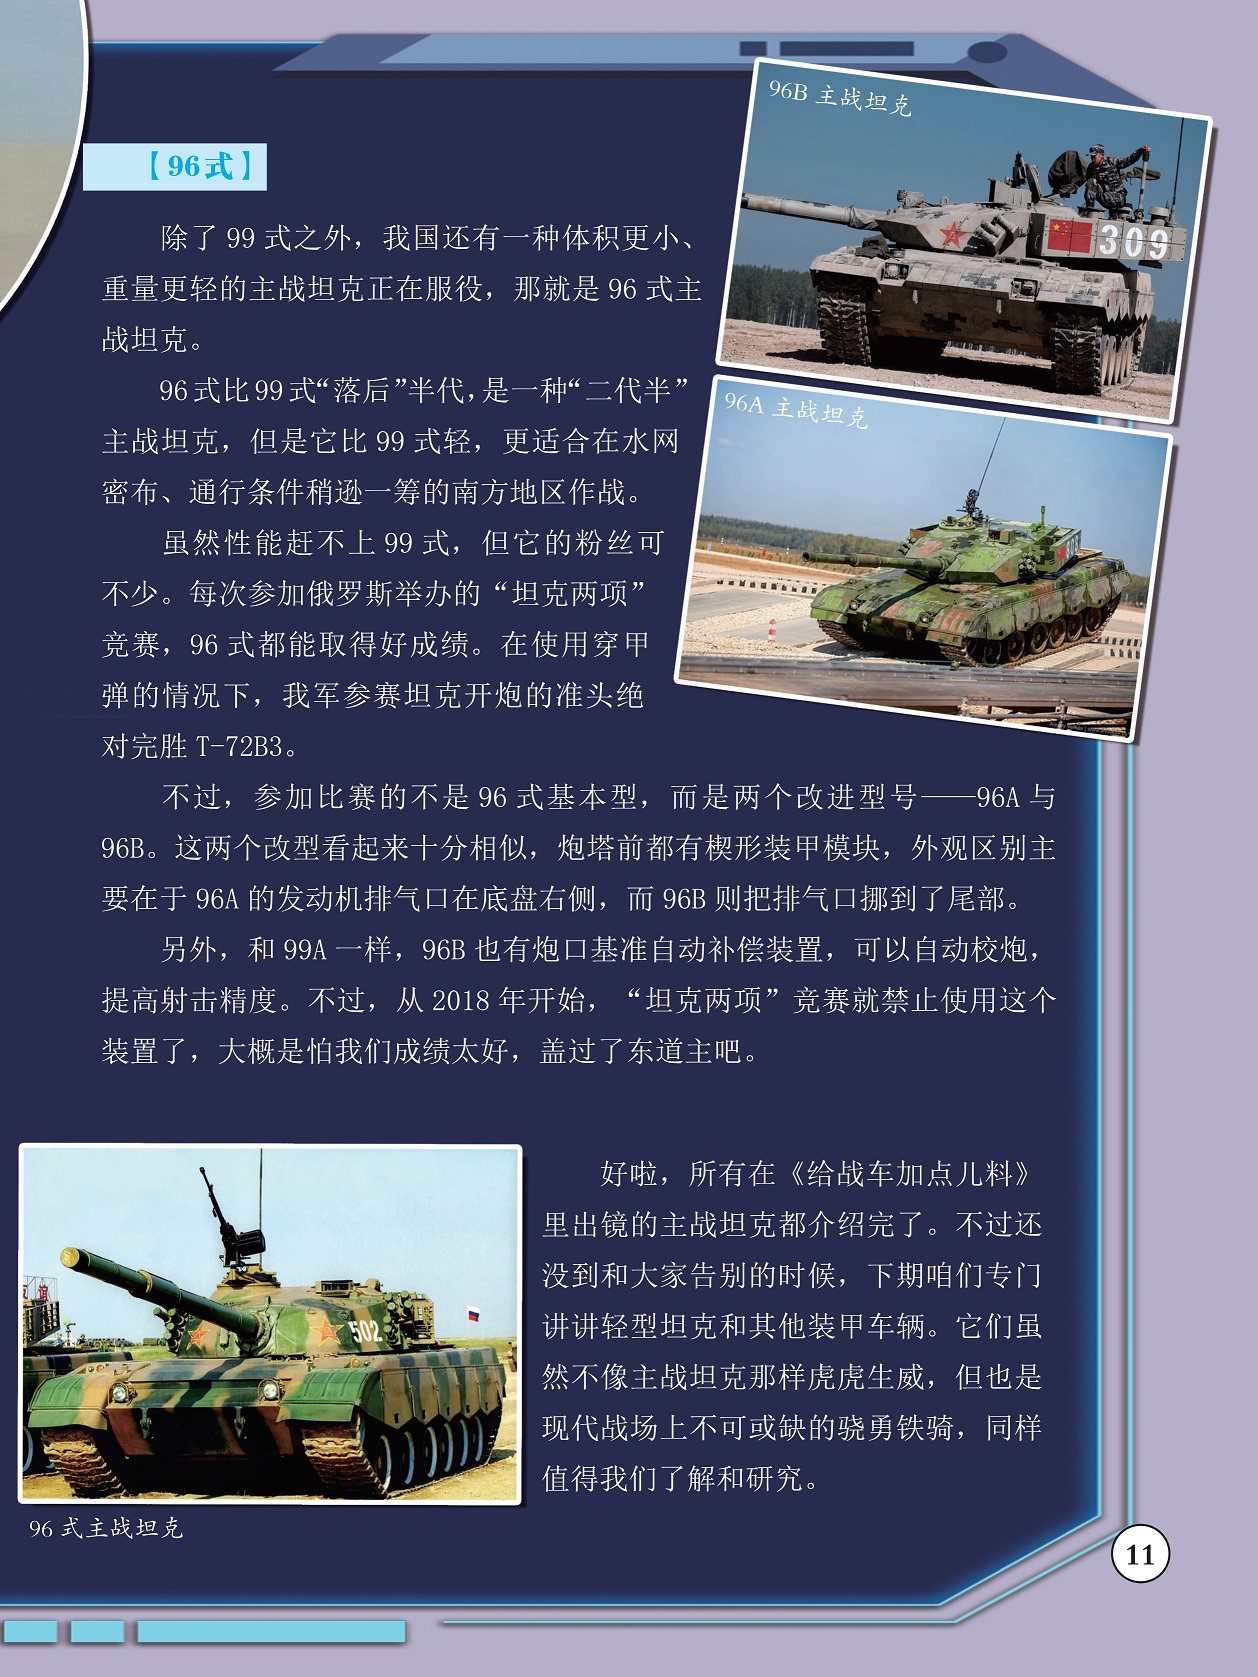 96式主战坦克,现代战场上不可或缺的骁勇铁骑